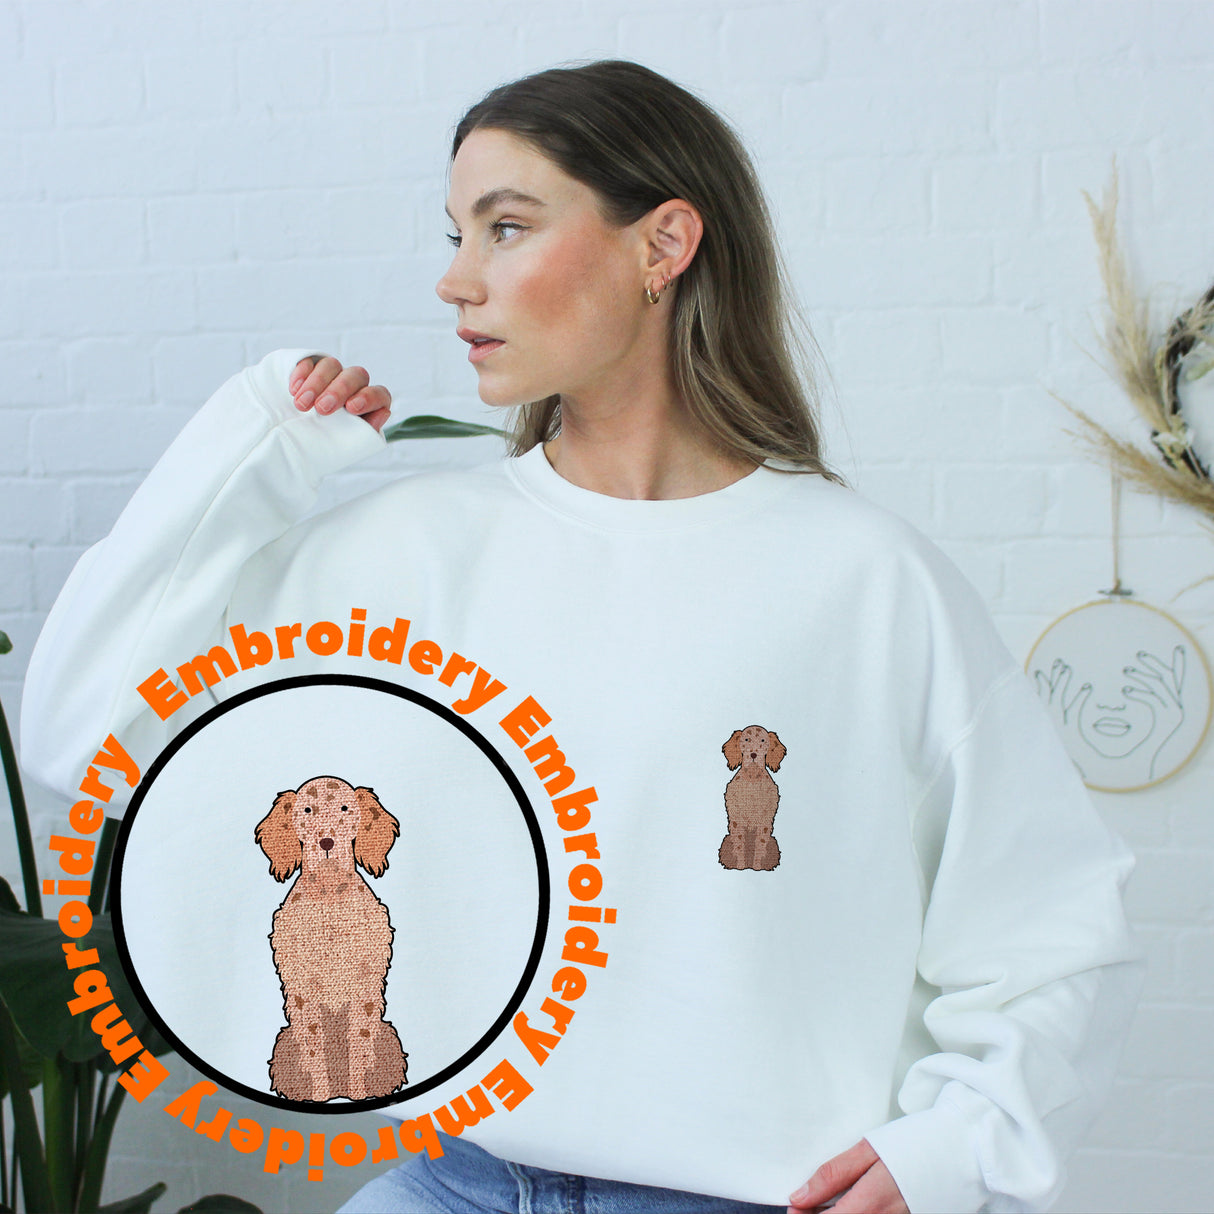 English Setter Adult Dog Embroidery Unisex Sweatshirt